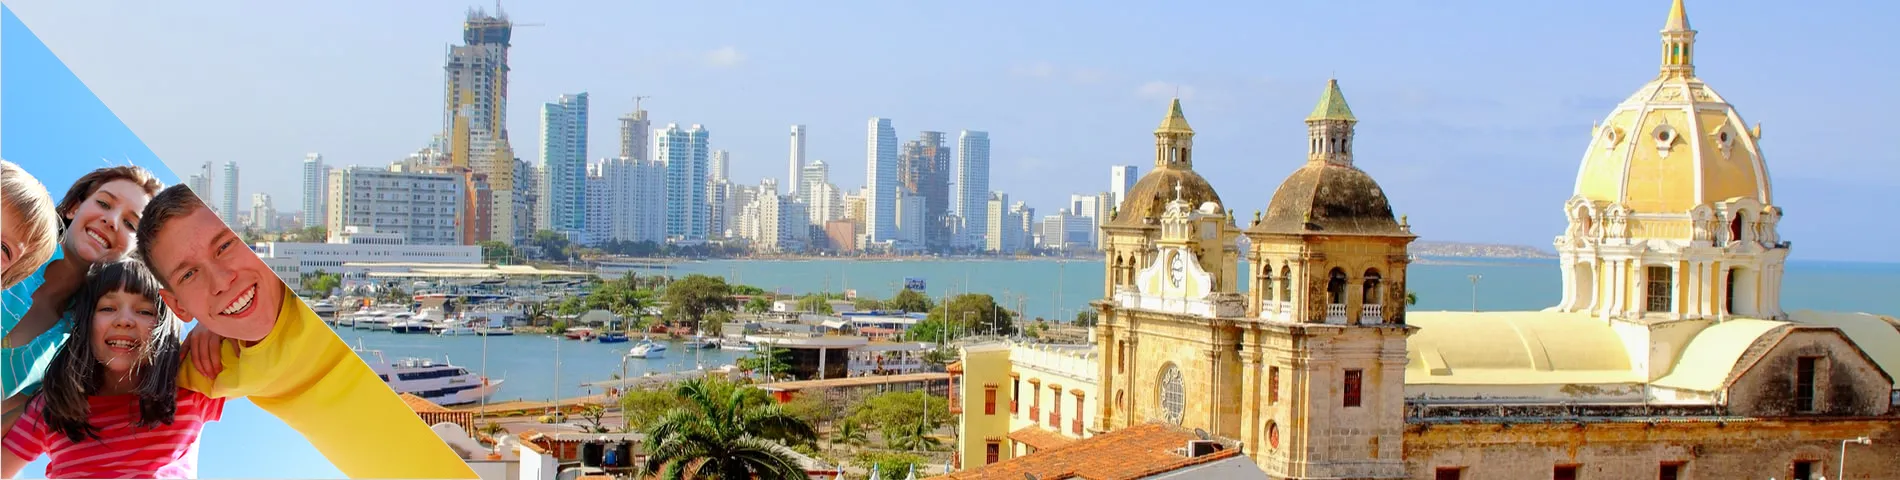 Cartagena - Spagnolo per ragazzi (6-18 anni)